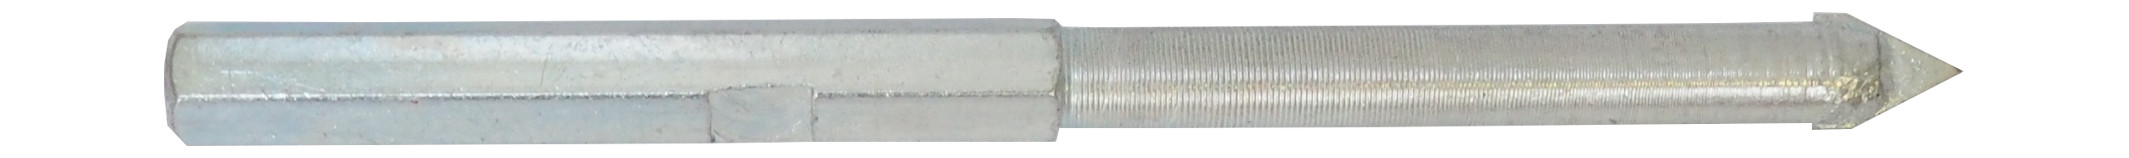 REFLEX vrták vodící, pro vykružovací korunky s karbidovými zrny, 33 - 103 mm 0.07 Kg TOP Sklad4 501807 451